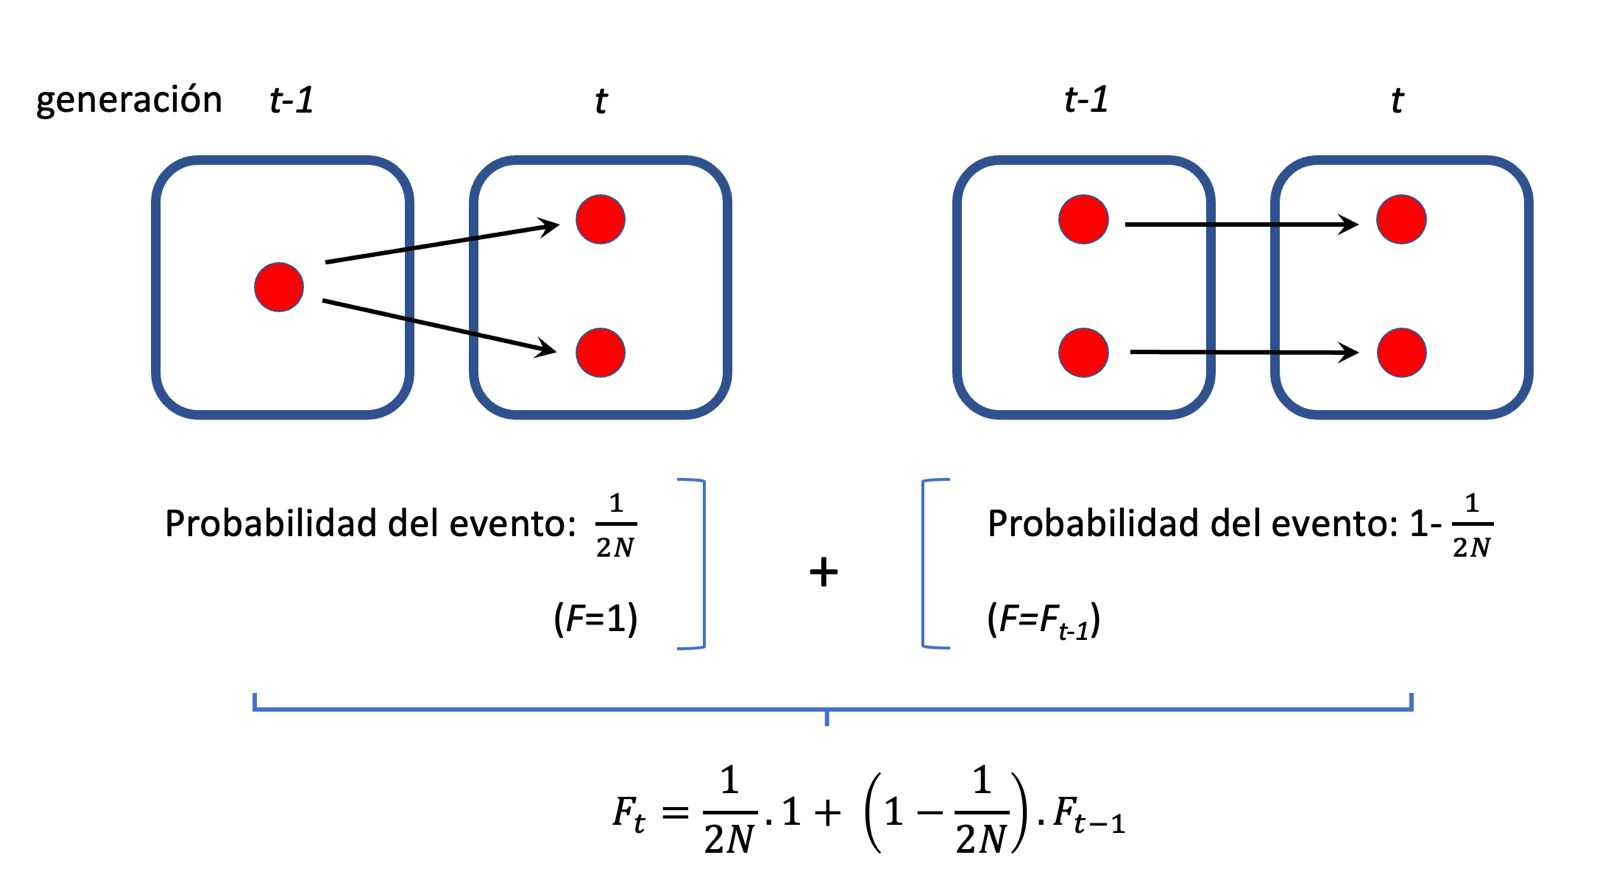 Ilustración del razonamiento detrás de la recursión para F en una población de tamaño finito. Existen dos alternativas disjuntas (de ahí la suma) para que un alelo sea idéntico por ascendencia en la generación t: que los alelos provengan del mismo alelo en la generación t-1, cuya probabilidad es \(\frac{1}{2N}\) (y en ese caso \(F=1\), por definición) o que los alelos provengan de distintas copias en la generación t-1, y en cuyo caso la probabilidad de que sean idénticos por ascendencia es por definición \(F_{t-1}\). Por lo tanto, la probabilidad de que dos alelos sean idénticos por ascendencia en la generación \(t\), considerando a la generación \(t-1\), es de \(F_t=\frac{1}{2N}+\left(1-\frac{1}{2N}\right) F_{t-1}\). Aplicando este razonamiento a las sucesivas generaciones anteriores se puede obtener, por recursión, la probabilidad de que dos alelos sean ídénticos por ascendencia a tiempo \(t\) (tomando como referencia la población a tiempo \(t=0\)).